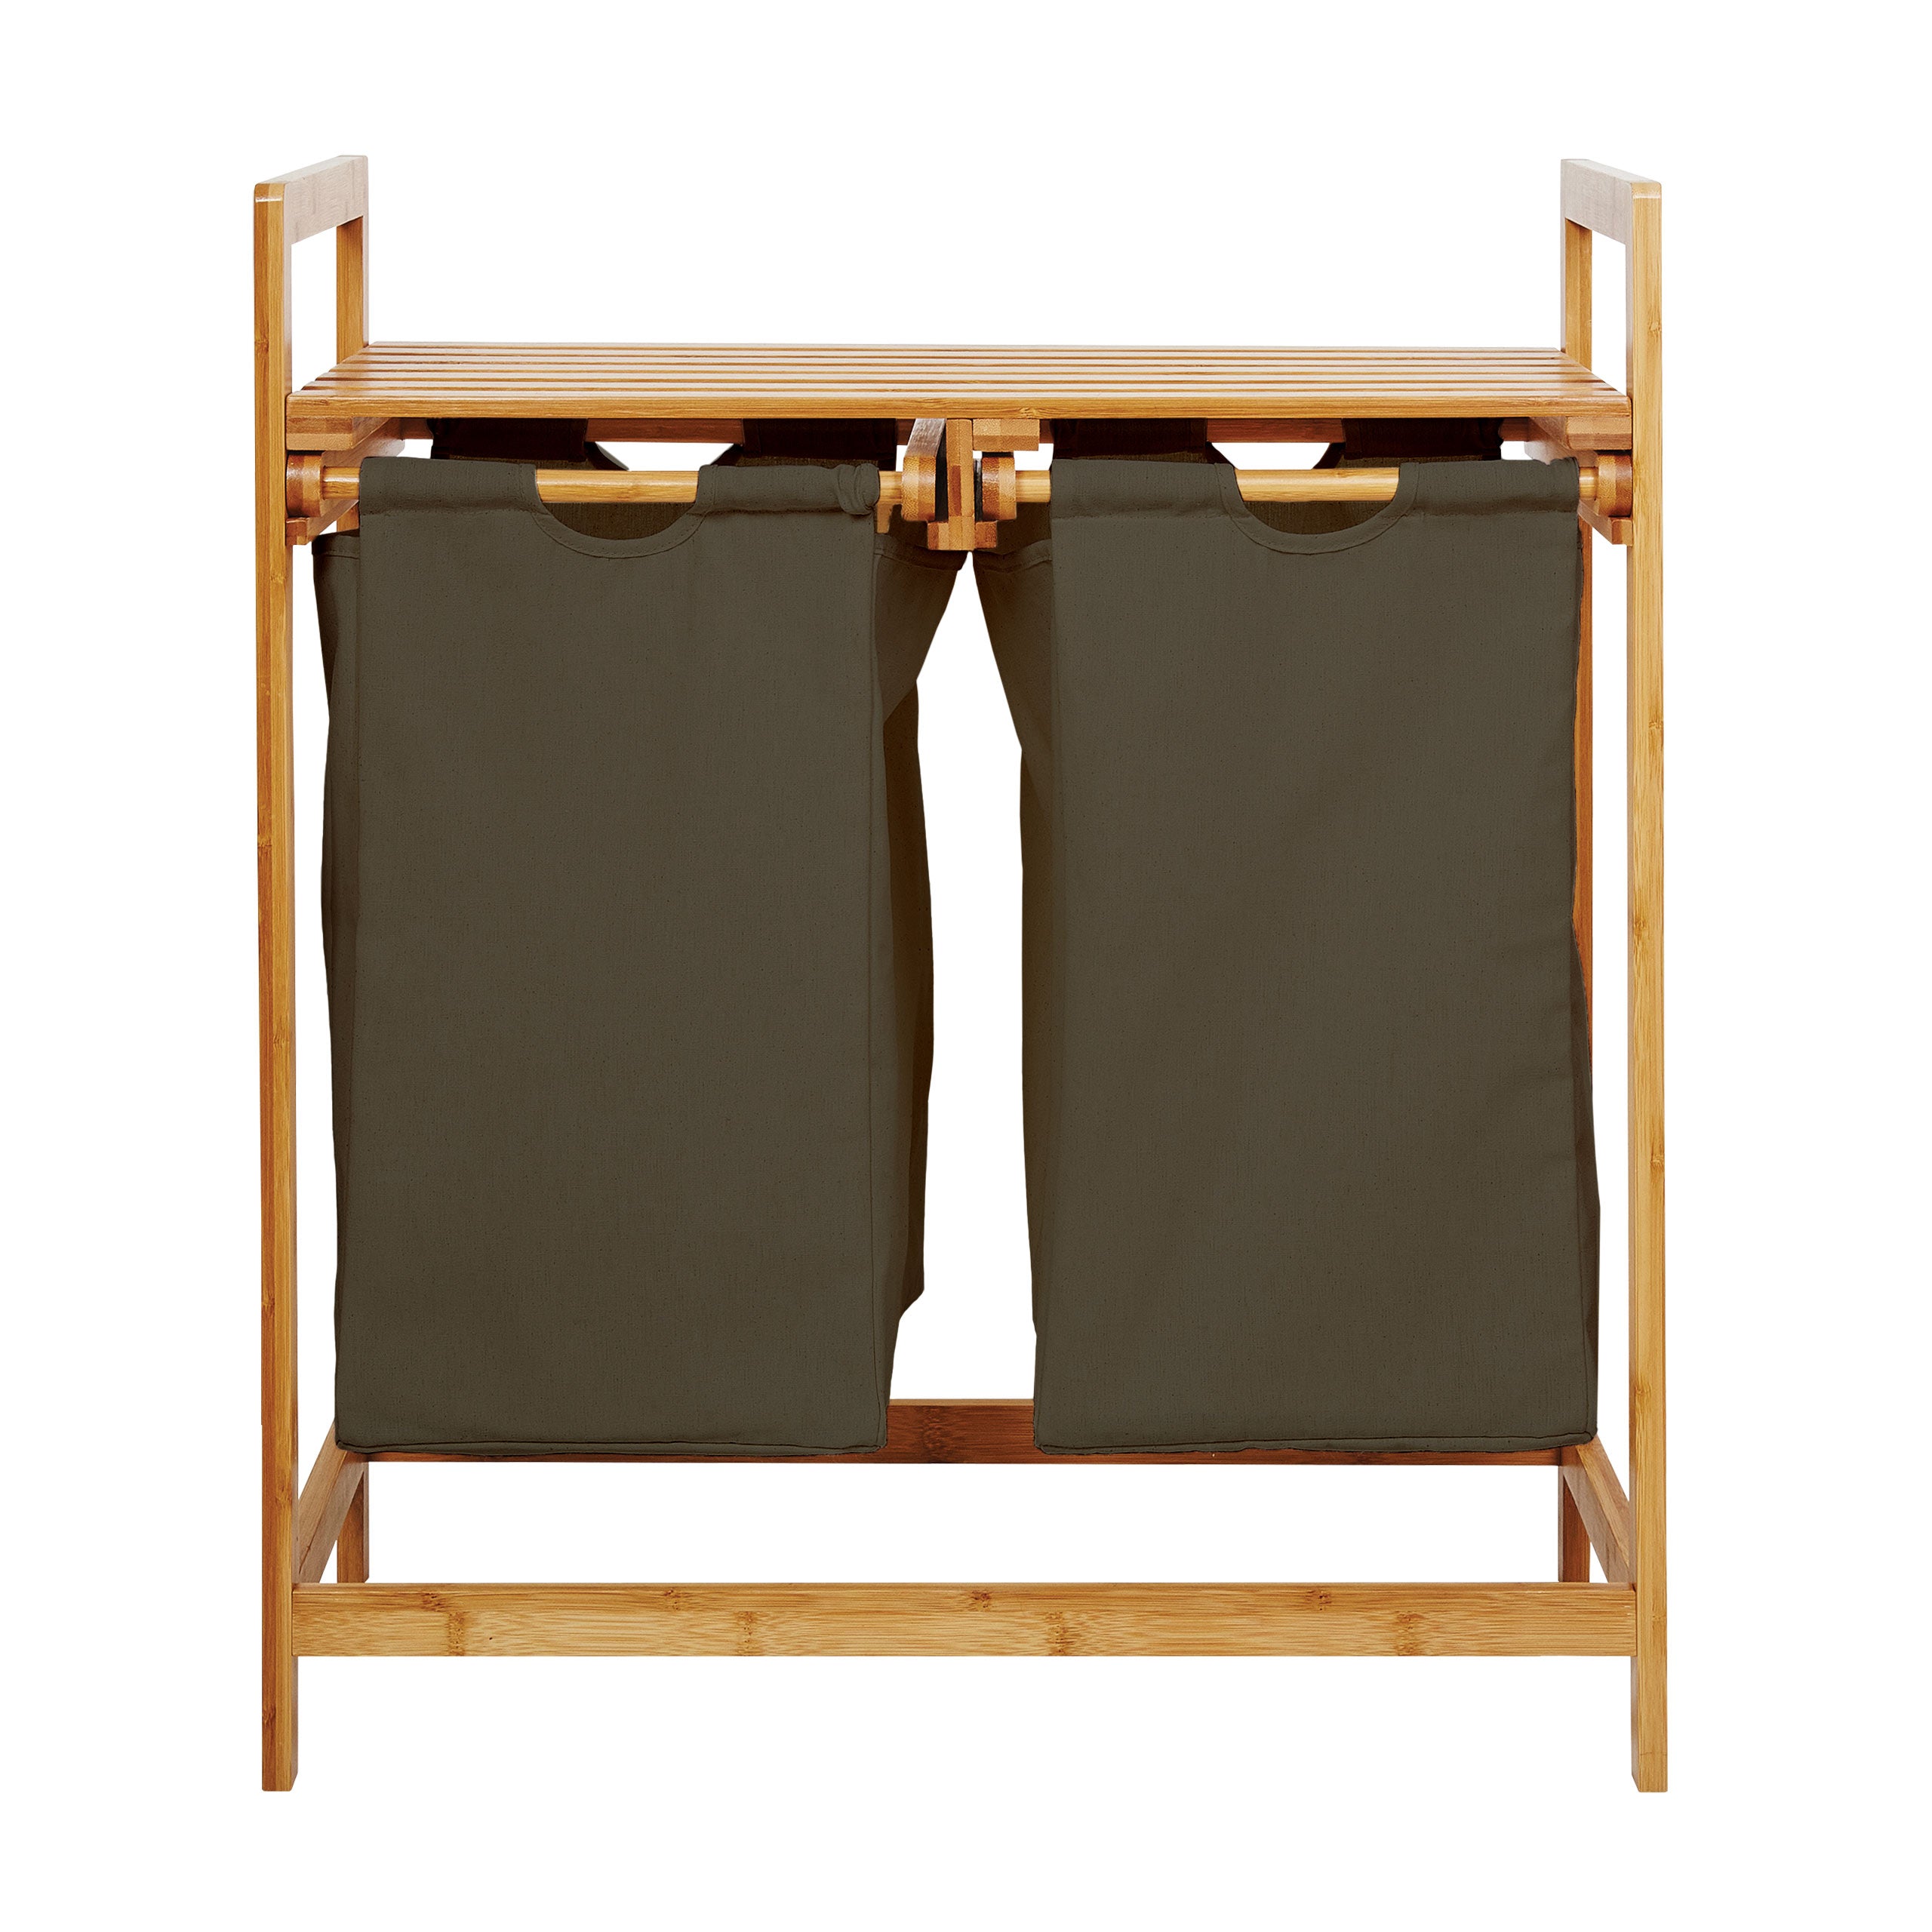 Wäschekorb aus Bambus mit 2 ausziehbaren Wäschesäcken - Größe ca. 73 cm Höhe x 64 cm Breite x 33 cm Tiefe - Farbe Oliv